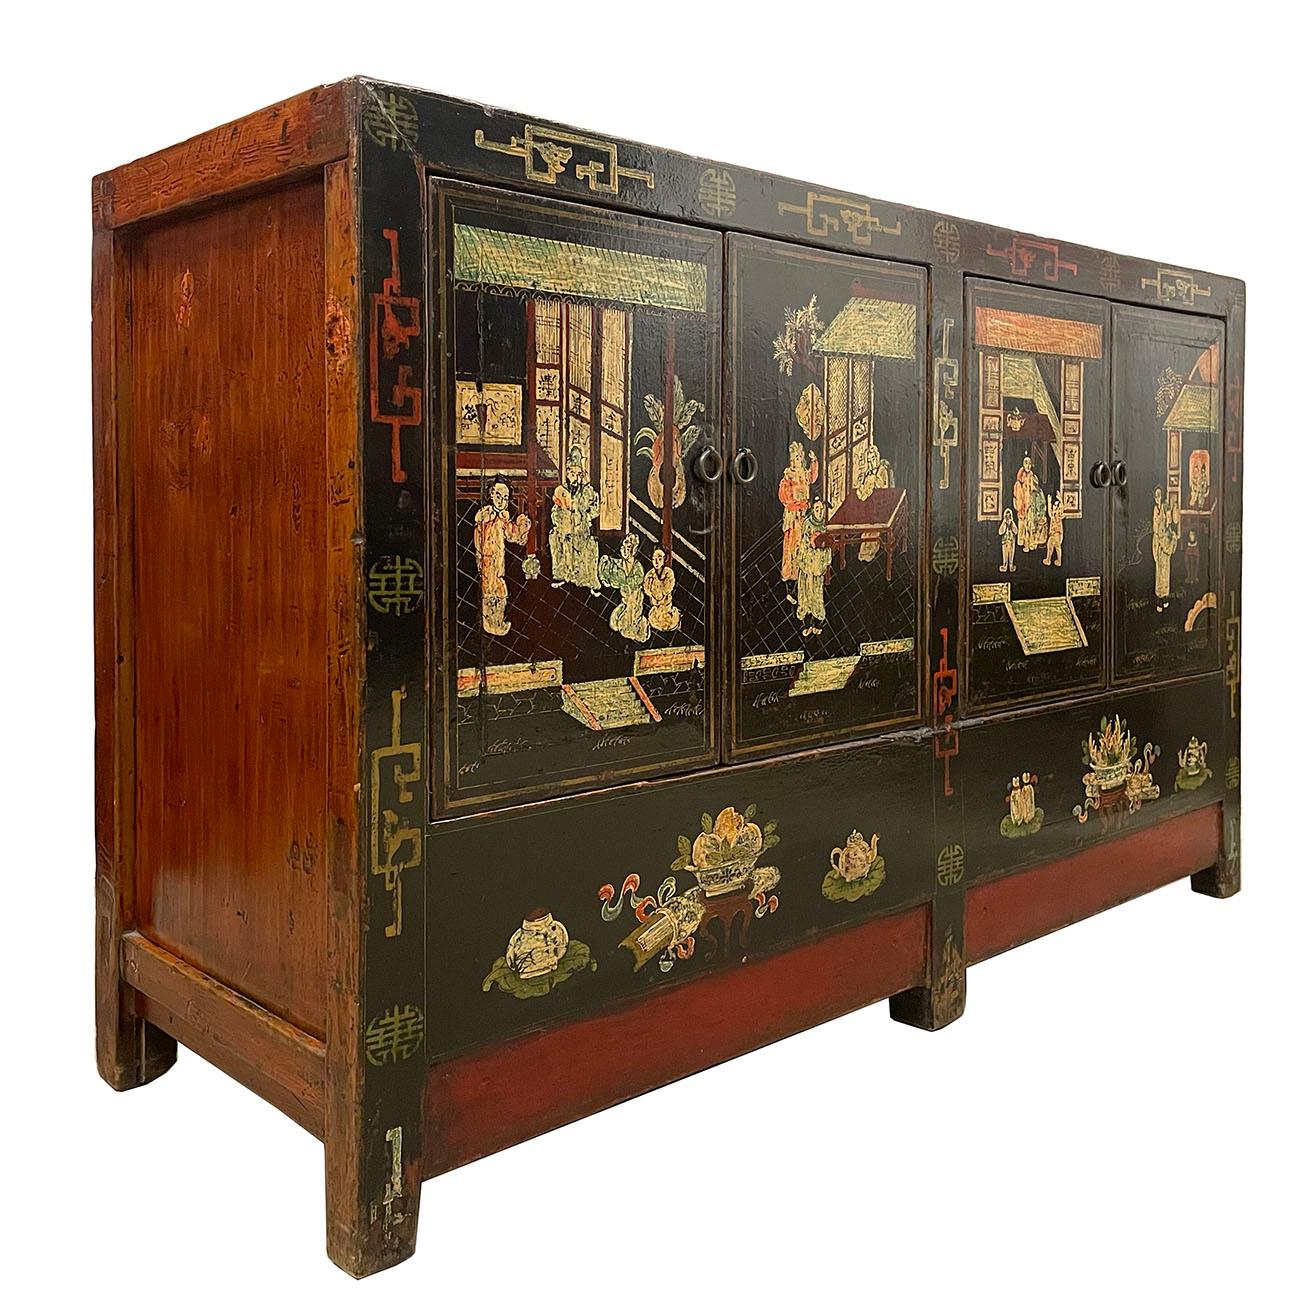 Cette armoire chinoise antique peinte en couleur shan xi a environ 130 ans d'histoire. Vous pouvez facilement l'identifier sur les photos. Ce meuble présente une magnifique peinture d'art populaire chinois traditionnel sur une façade en laque noire.